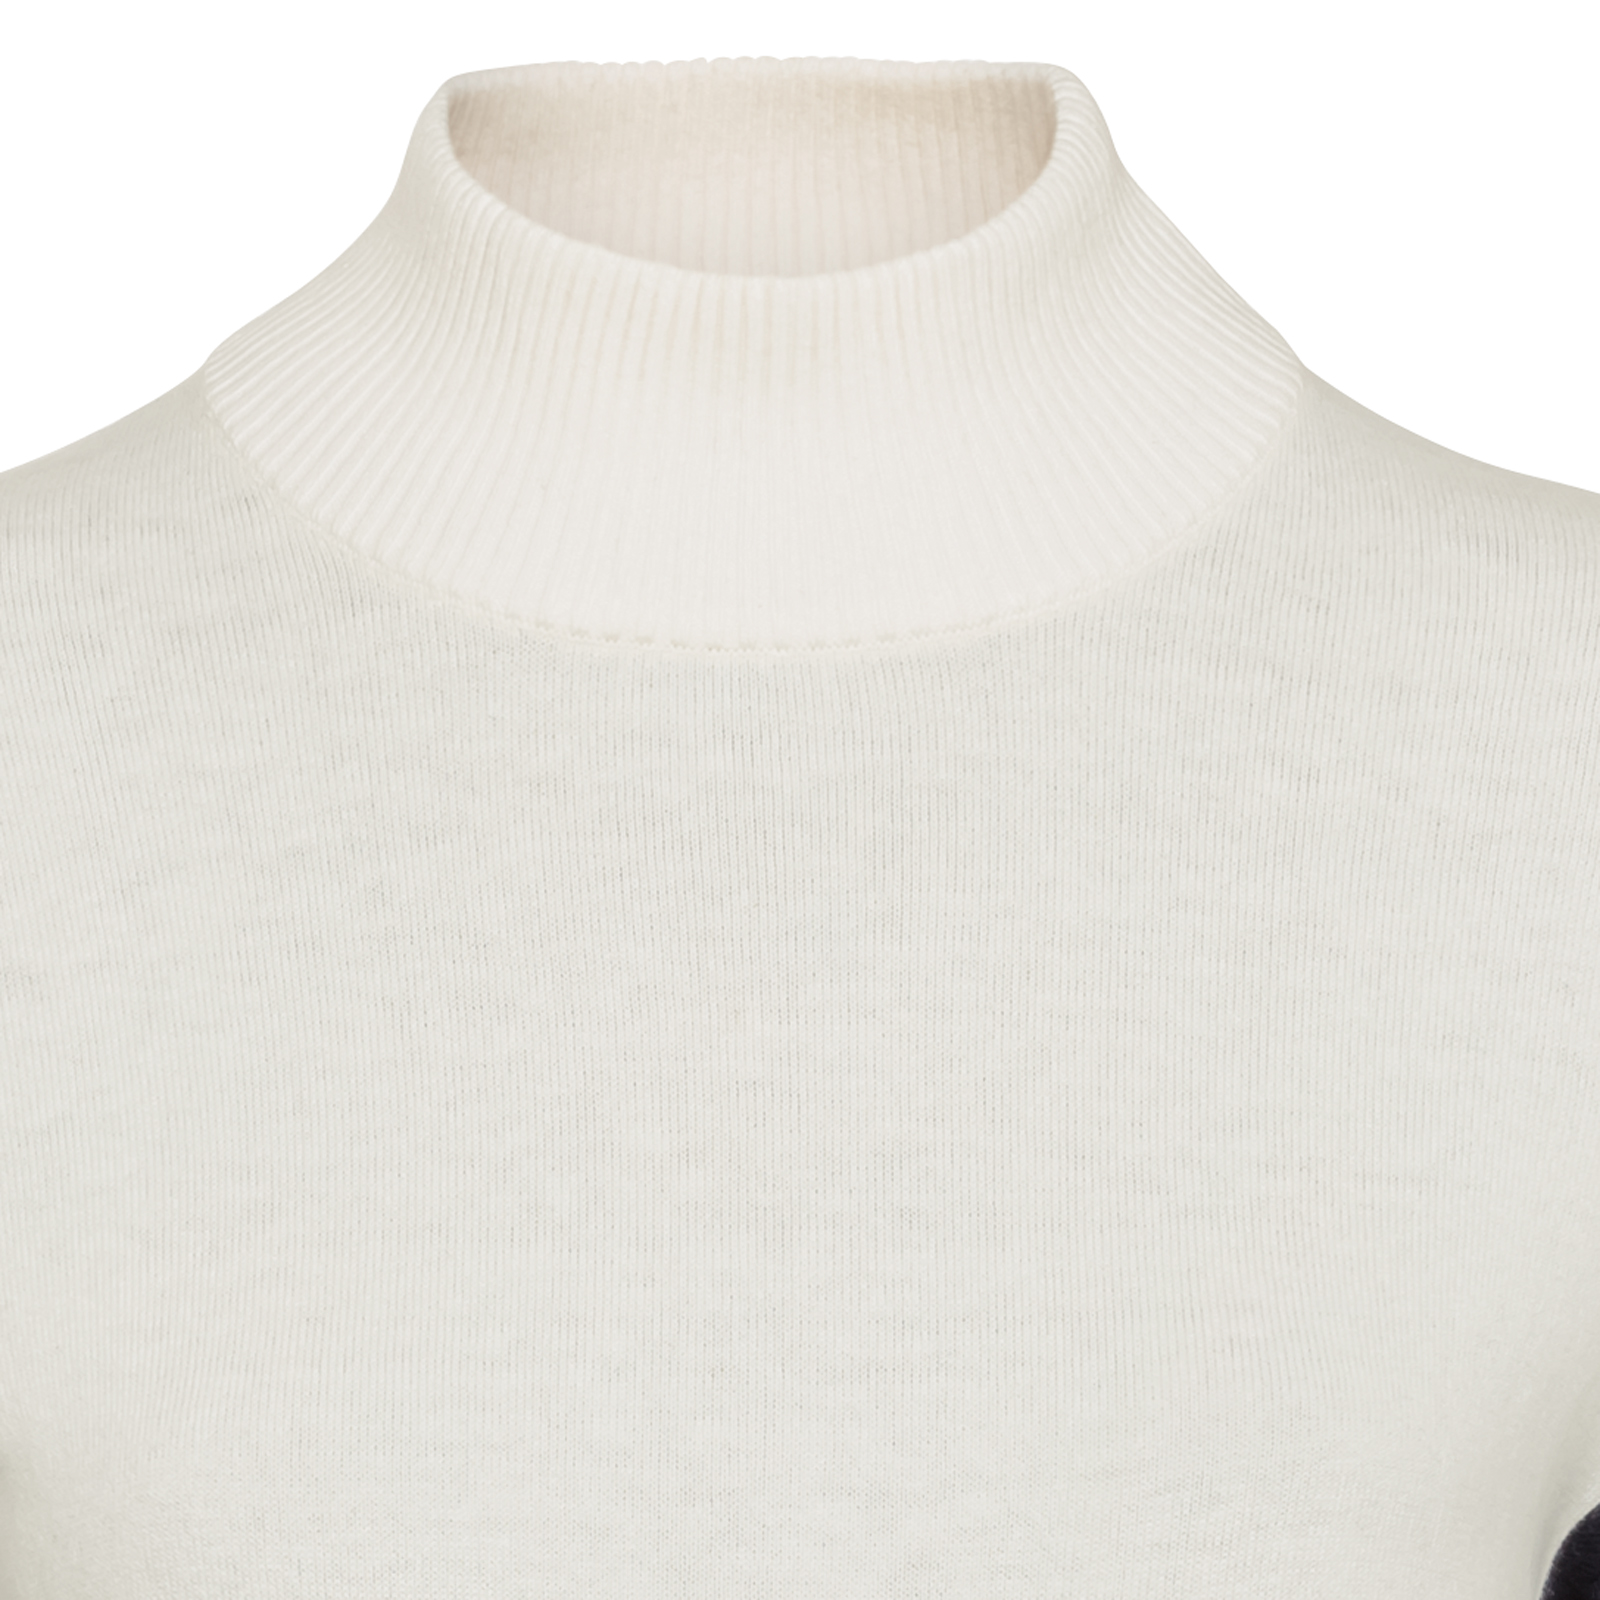 Elegante suéter de cuello alto con cachemira para mujer